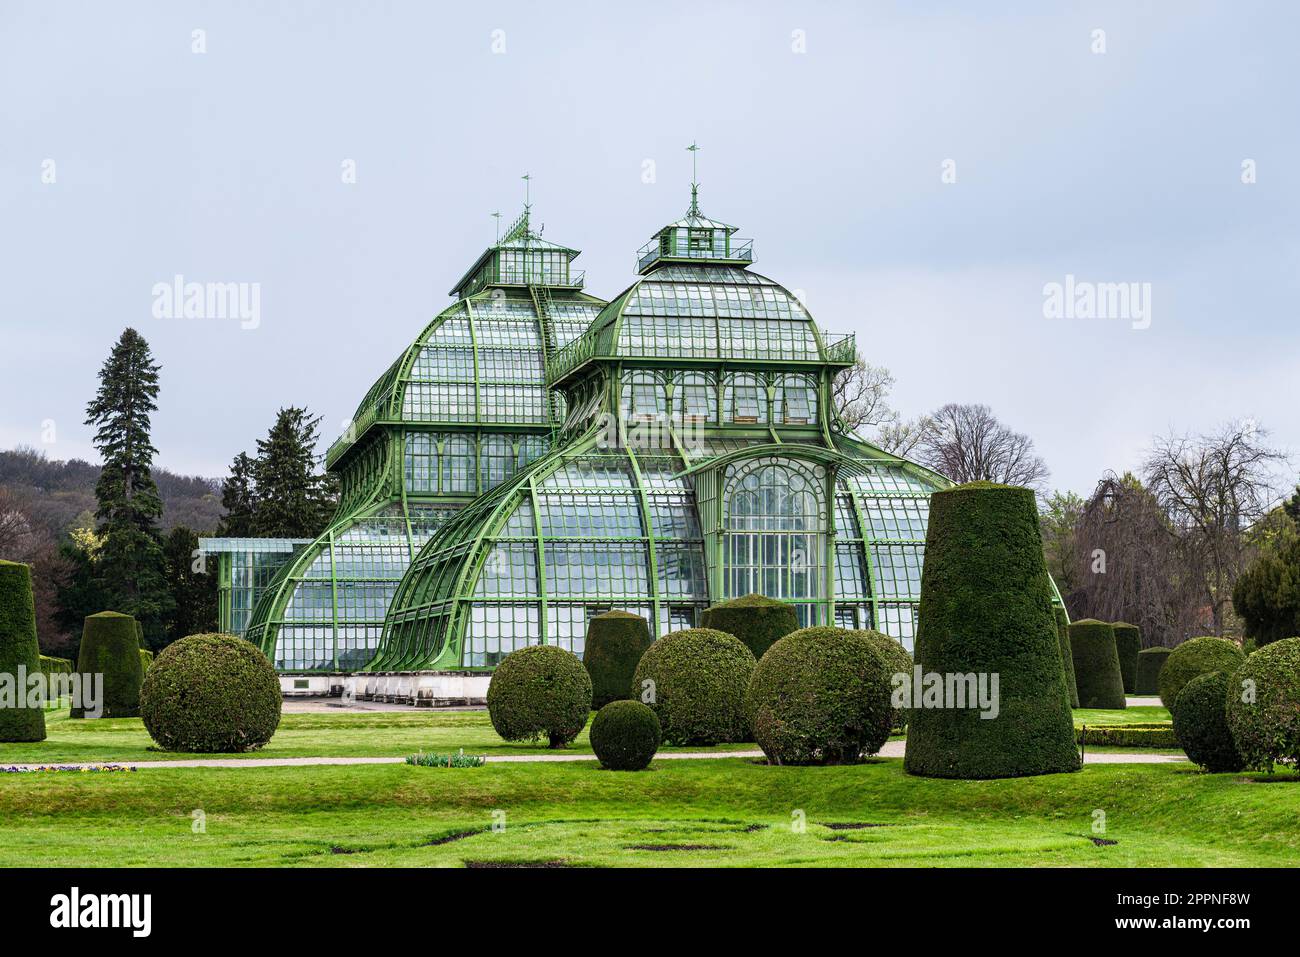 Les dômes du Palm House en fer forgé, fonte et verre dans le parc du château de Schönbrunn sous un ciel gris couvert, Vienne, Autriche Banque D'Images